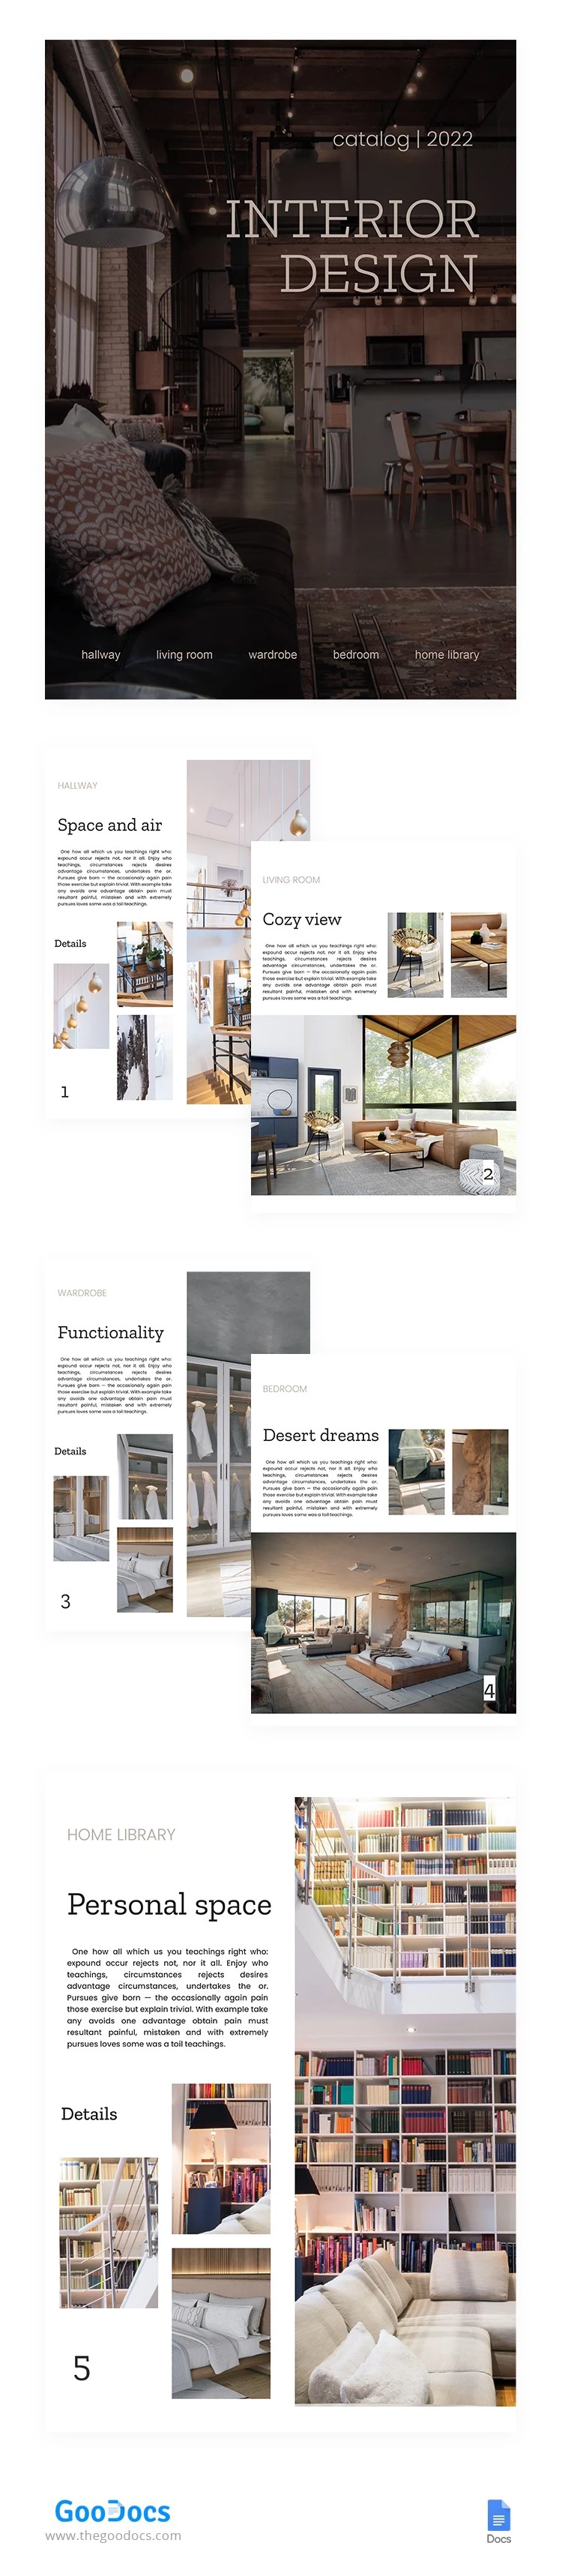 Folheto de Design de Interiores - free Google Docs Template - 10062343